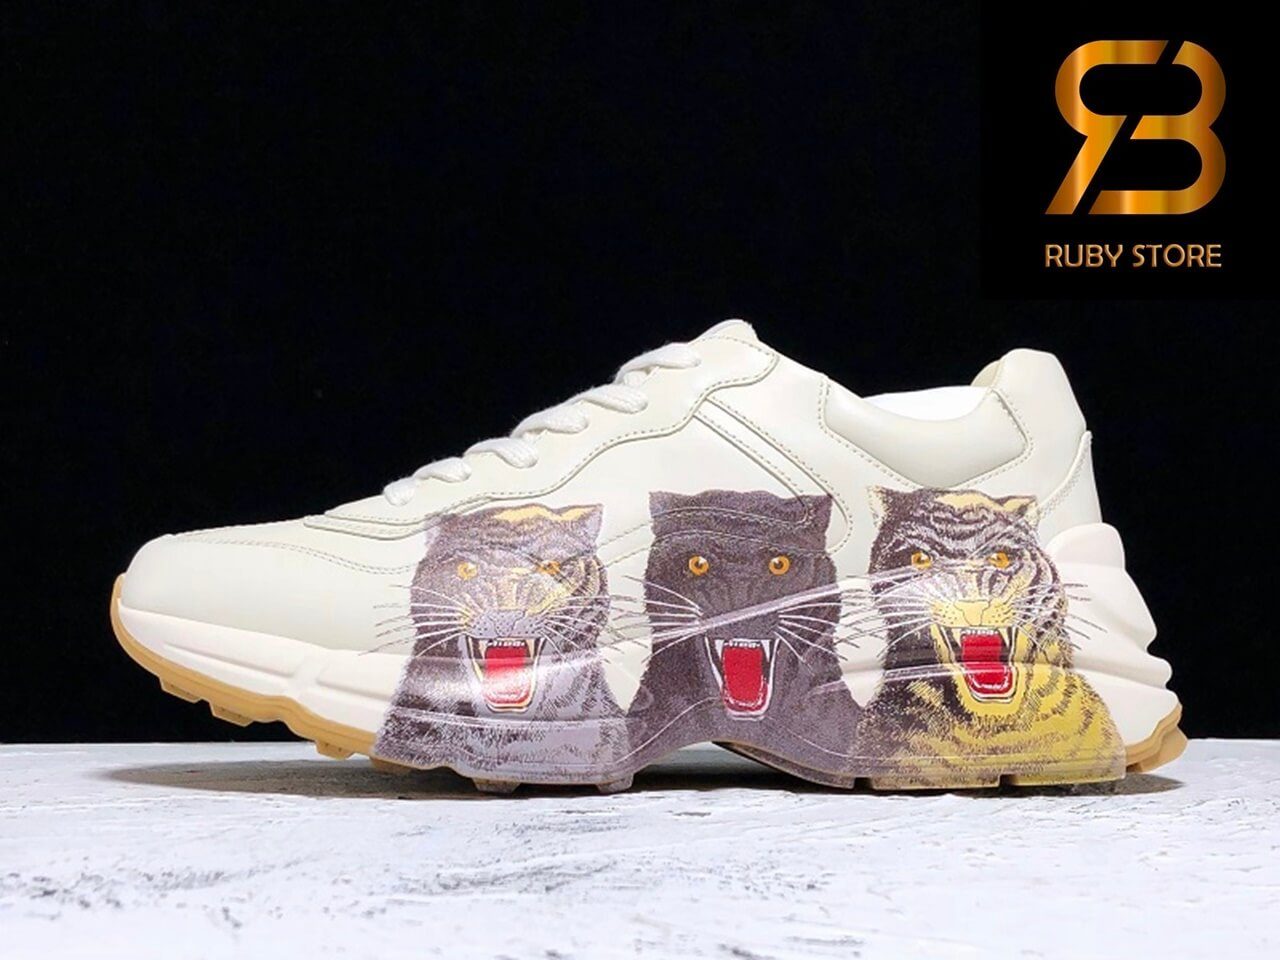 giày gucci rhyton leather sneaker with tigers replica 1:1 siêu cấp ở hồ chí minh